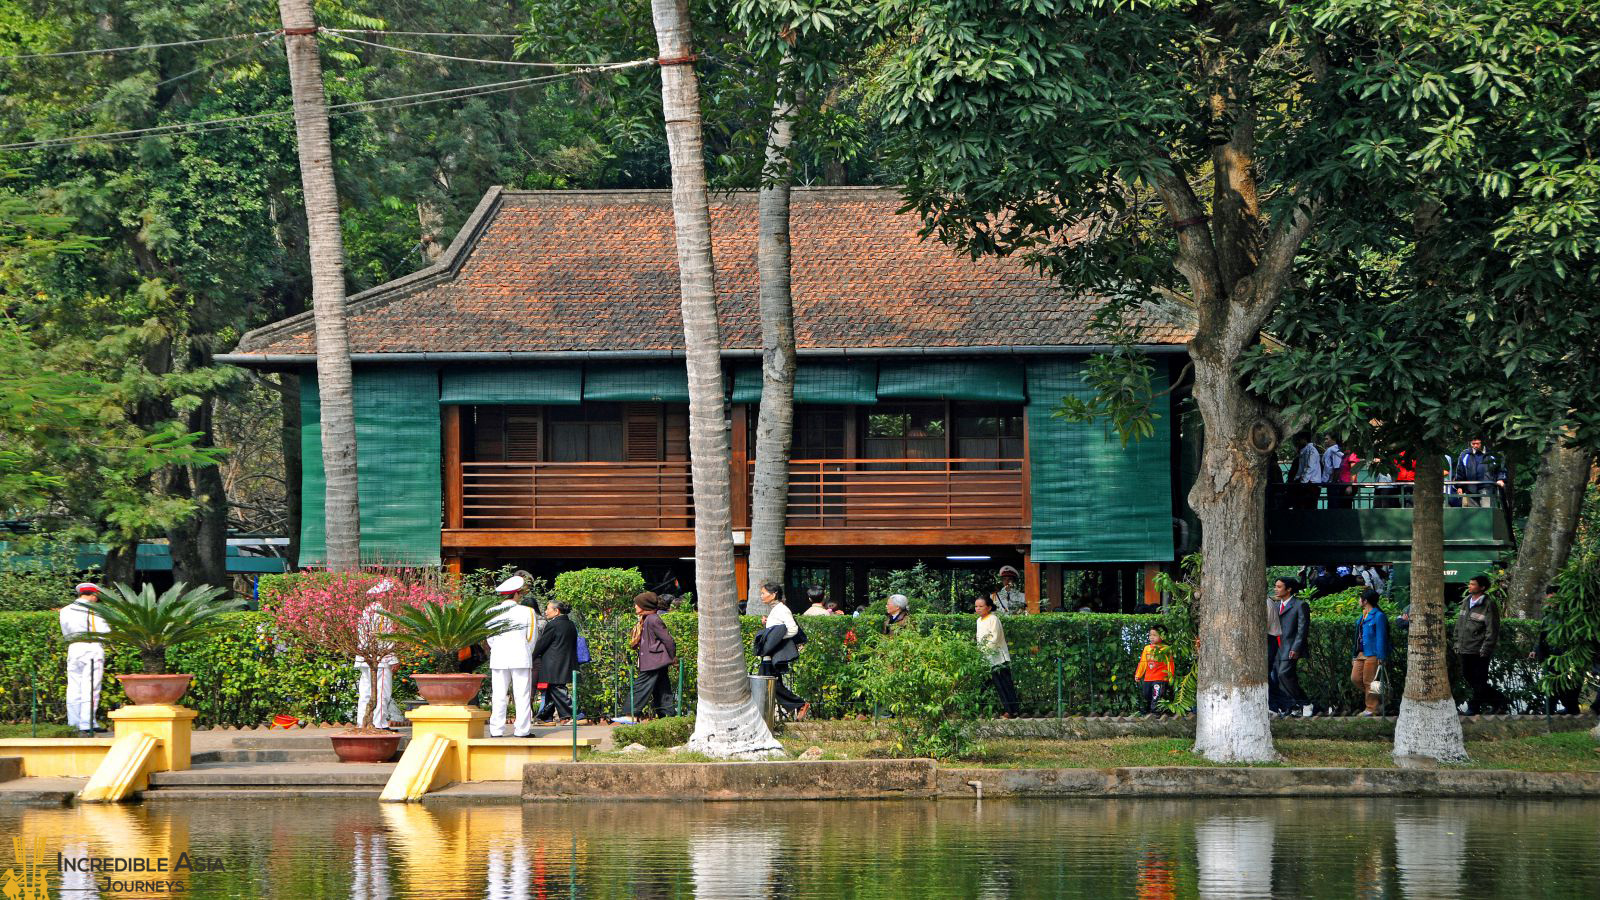 Ho Chi Minh's House on Stilts